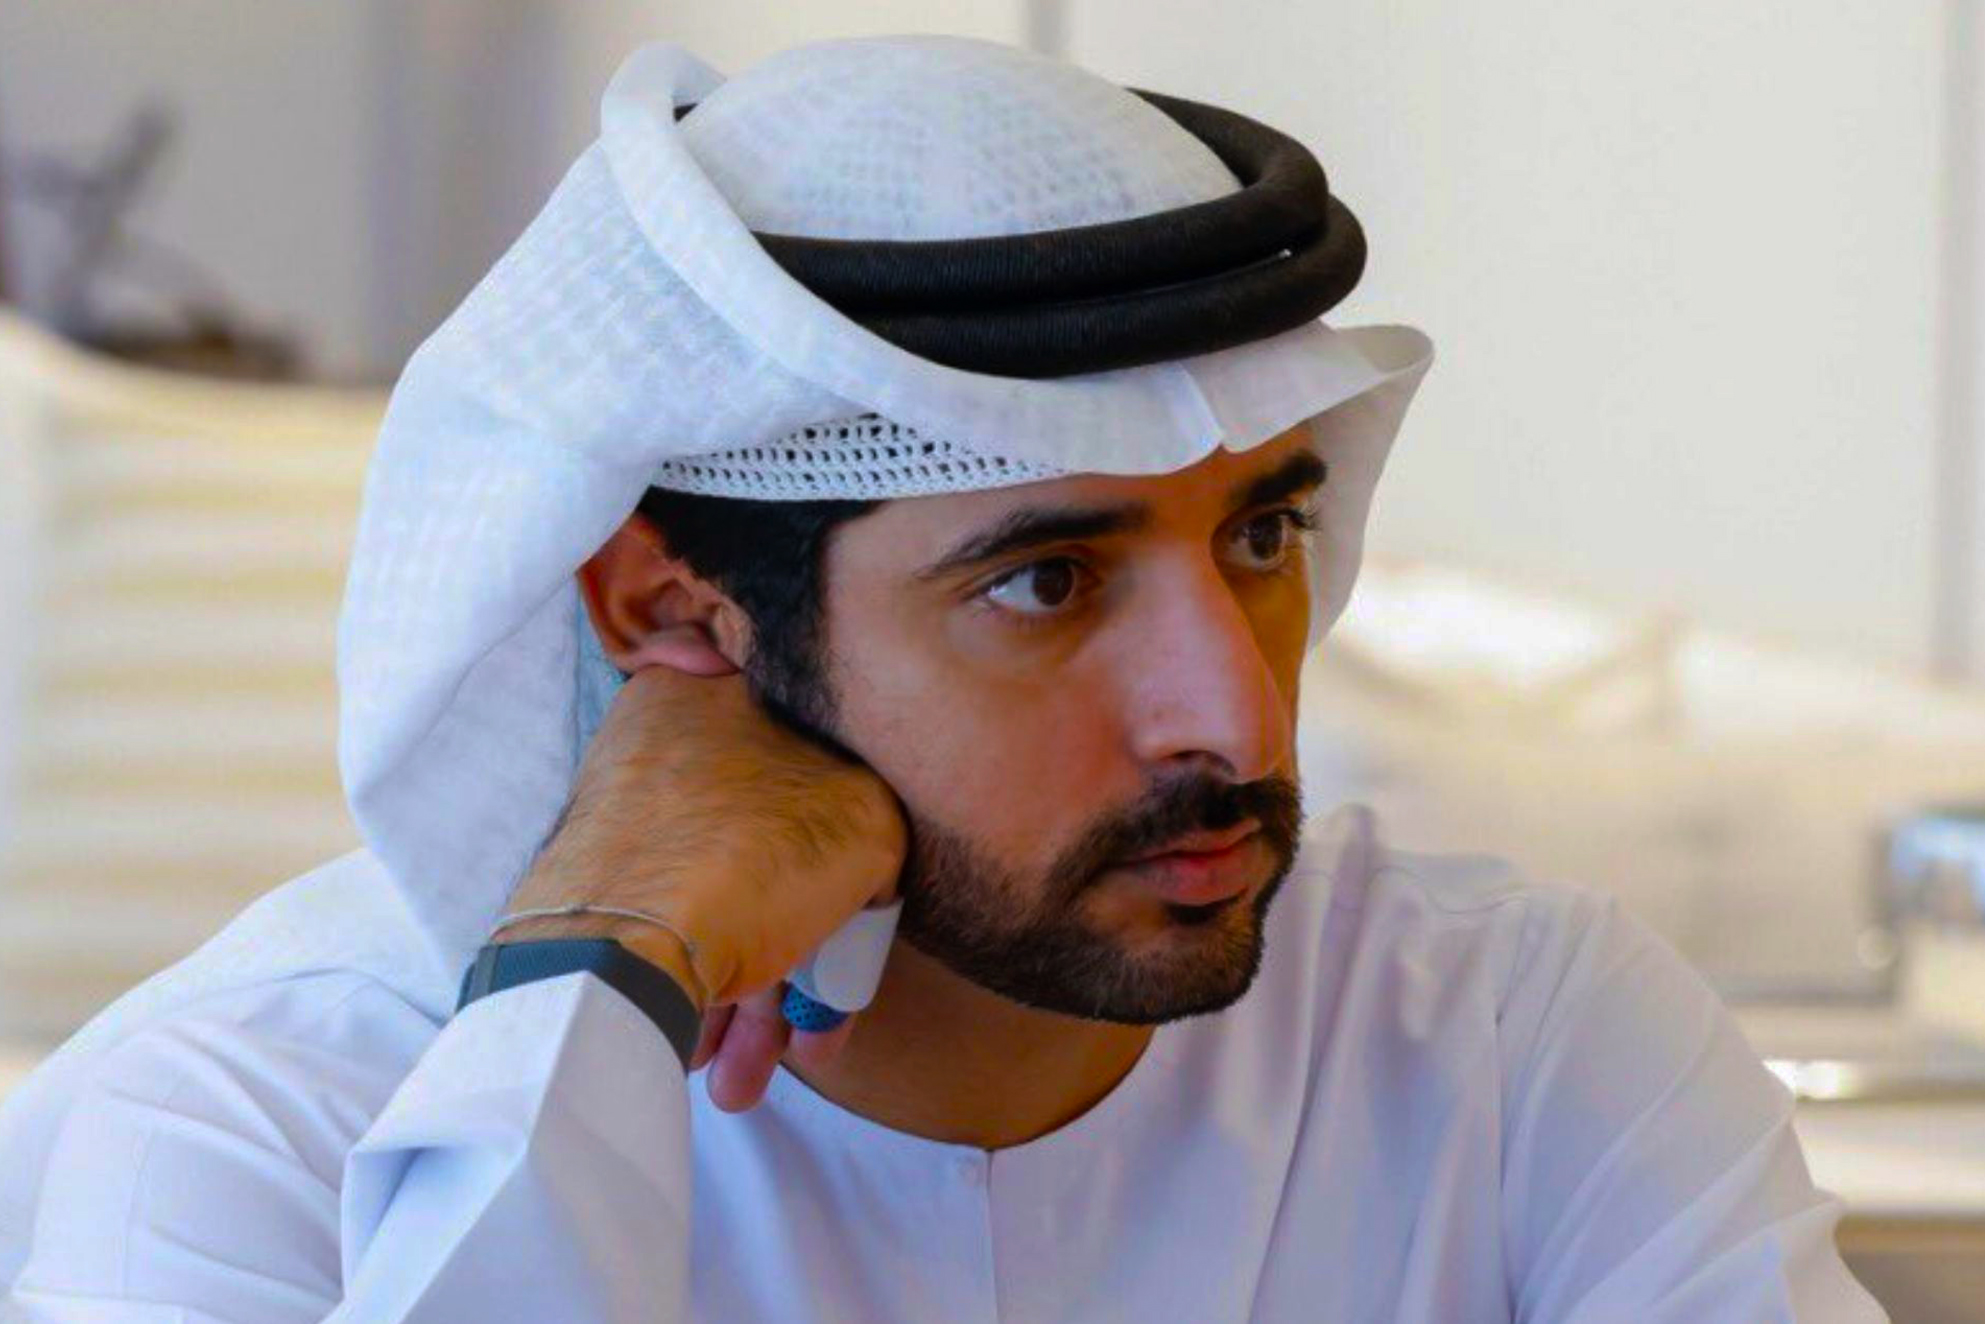 Seine Hoheit Scheich Hamdan bin Mohammed bin Rashid Al Maktoum spricht über die Top-10-Ergebnisse der Privatschulen Dubais in PISA 2022 nach der Veröffentlichung der Daten im Jahr 2023. Lob für KHDA. Offiziell.